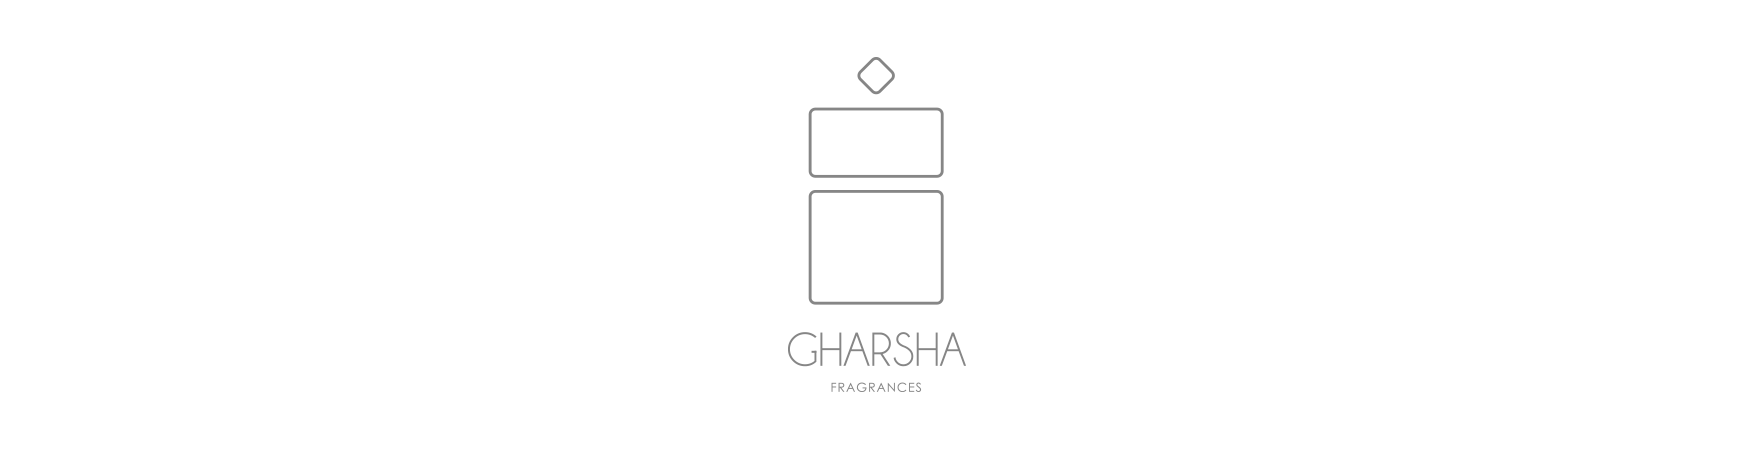 Gharsha